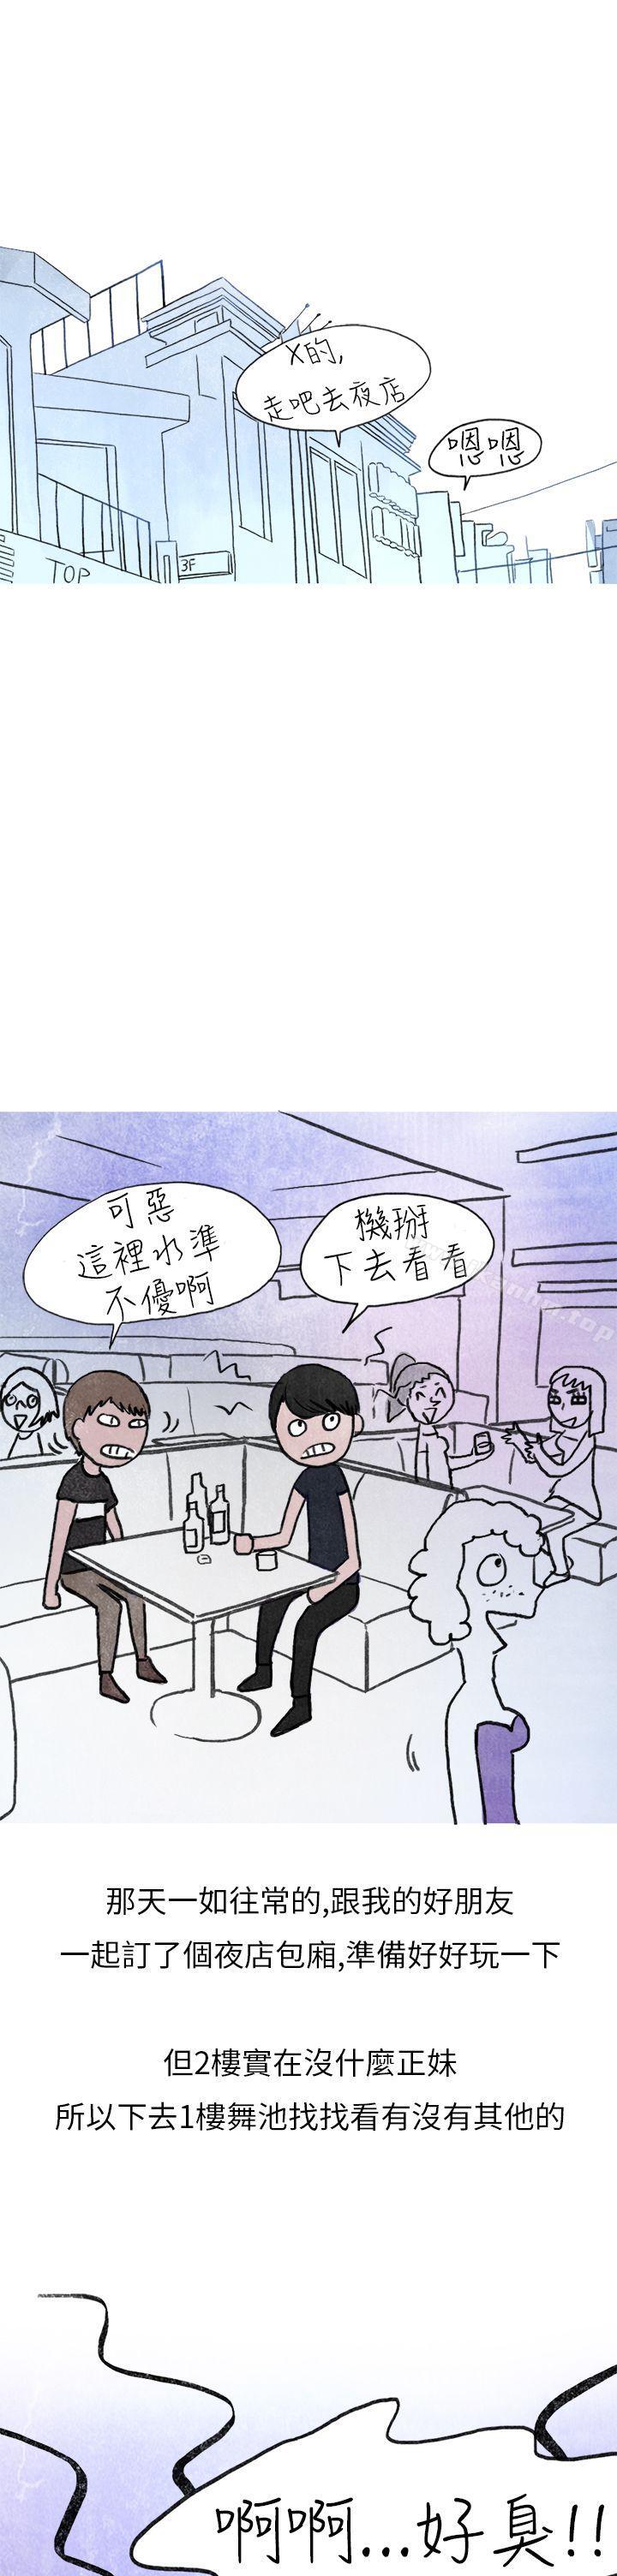 漫画韩国 秘密Story第二季   - 立即阅读 第二季 在夜店遇見的性感女神(上)第5漫画图片